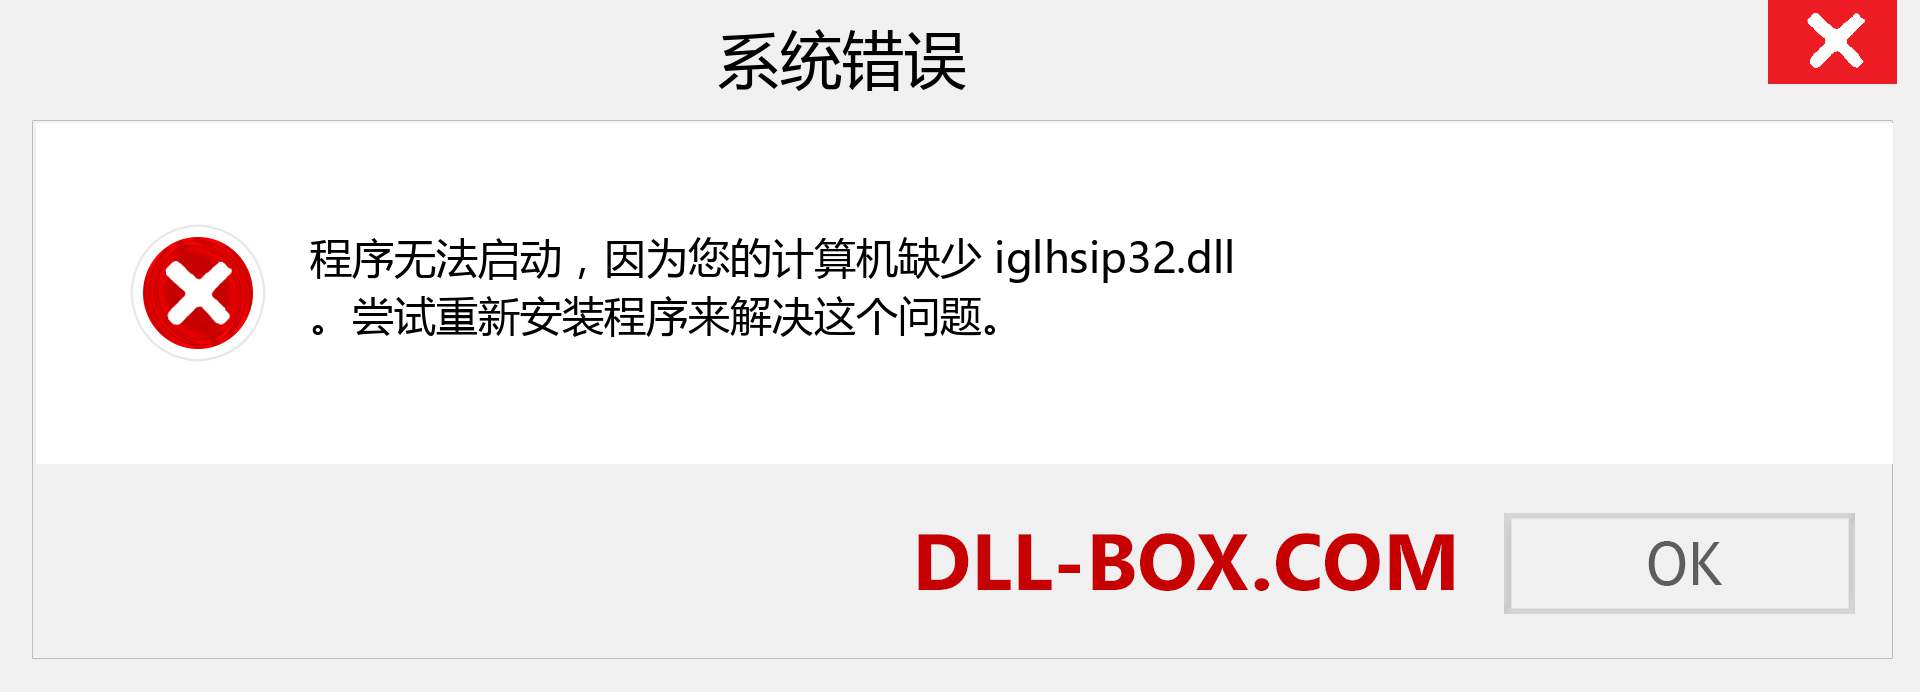 iglhsip32.dll 文件丢失？。 适用于 Windows 7、8、10 的下载 - 修复 Windows、照片、图像上的 iglhsip32 dll 丢失错误